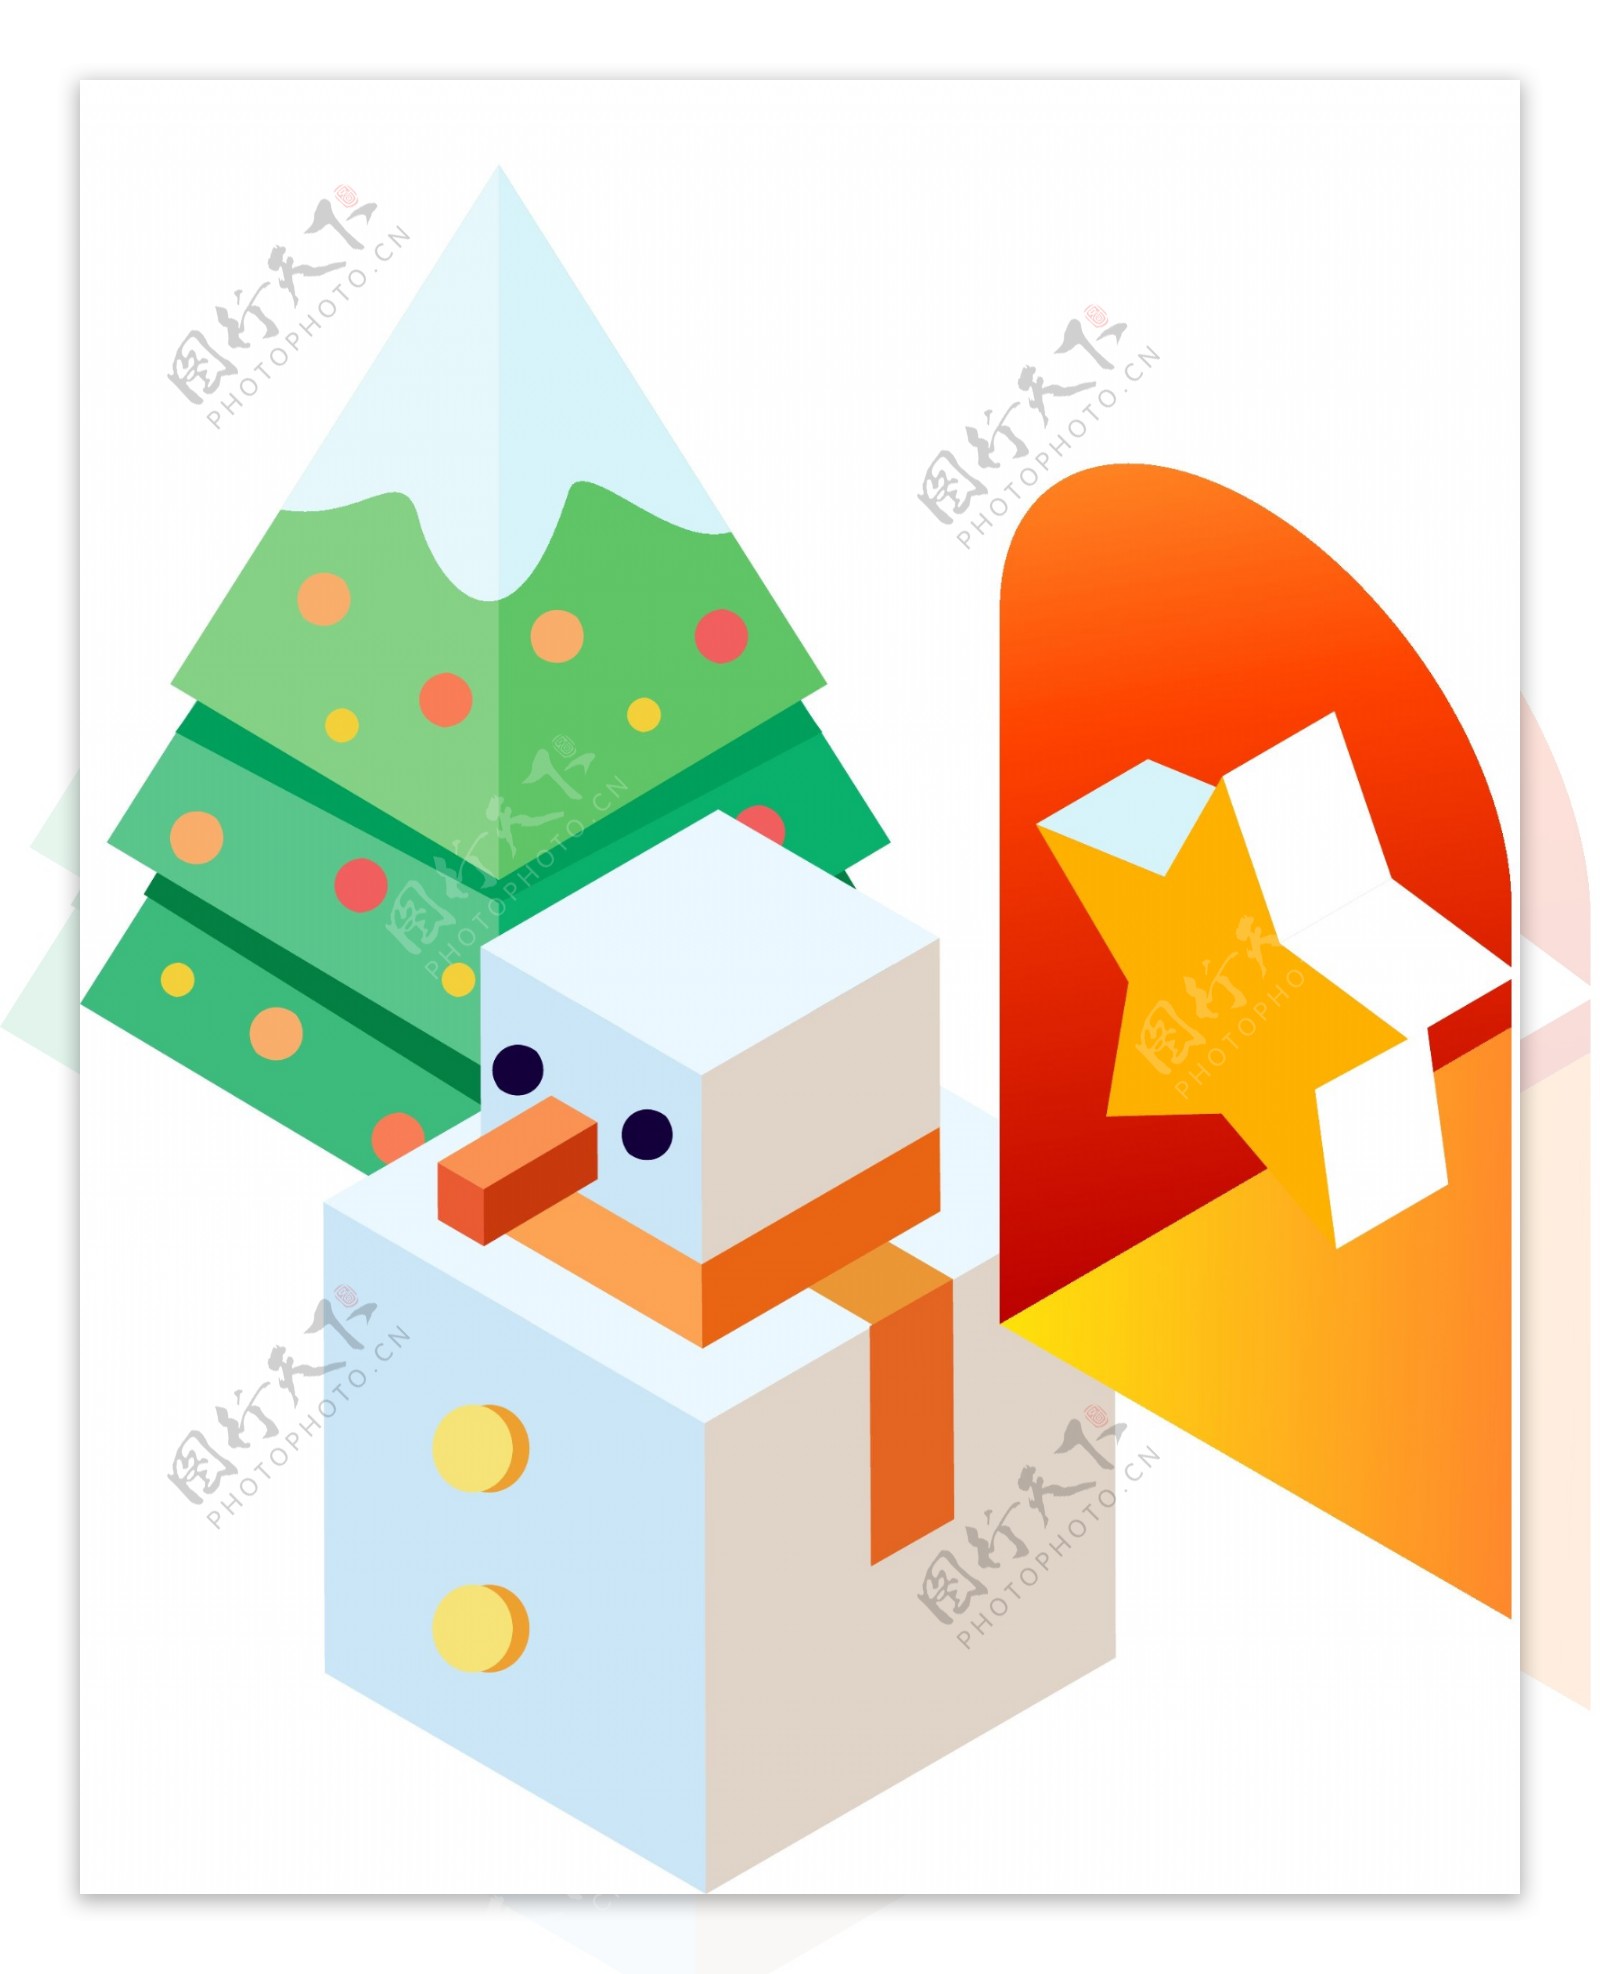 2.5D几何图形组成的雪人五角星和圣诞树